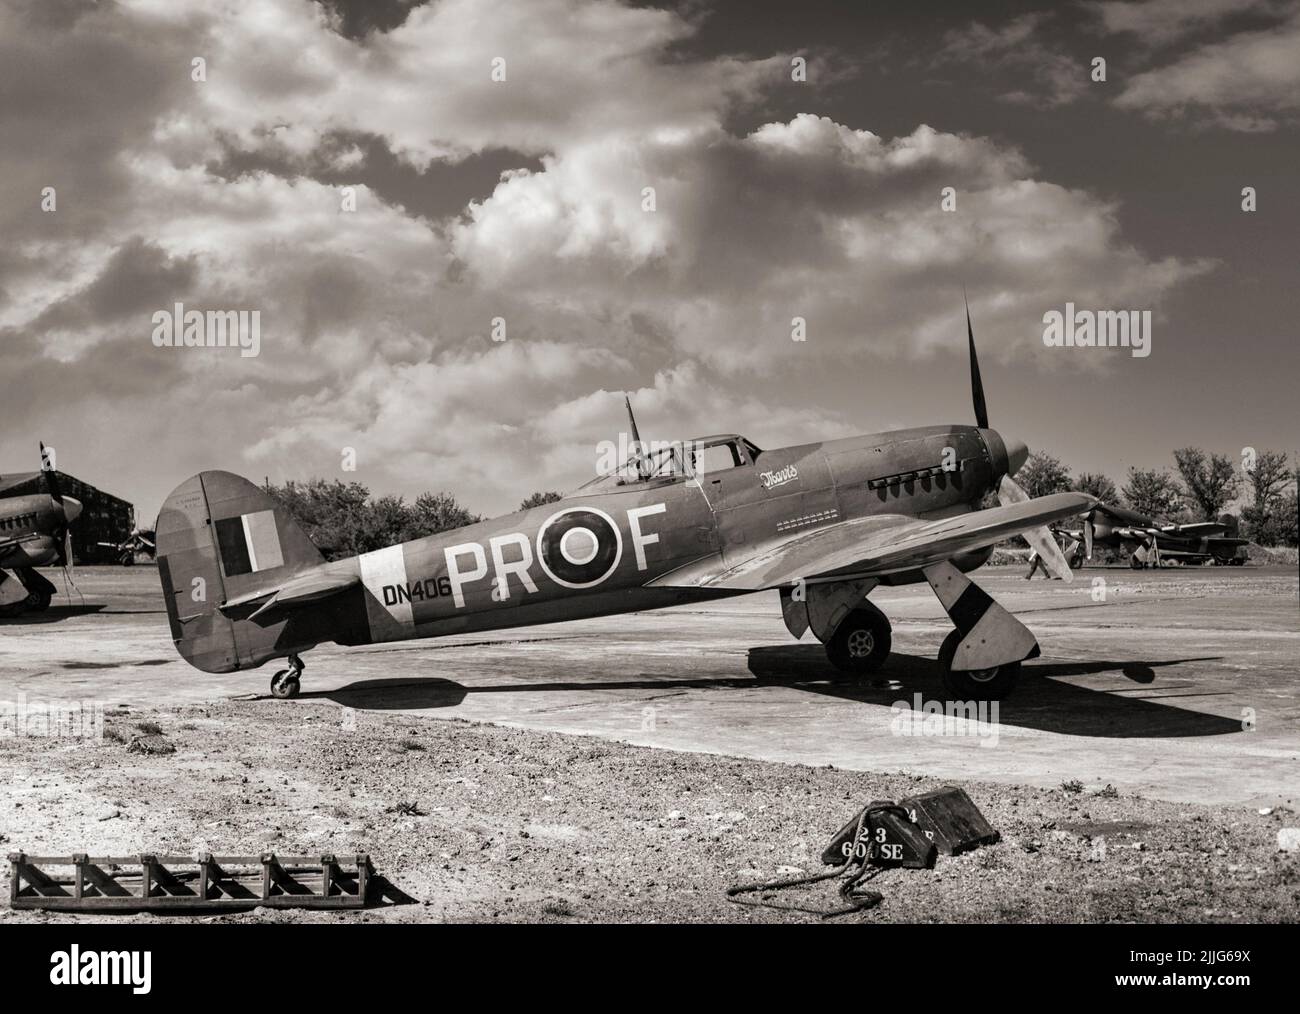 El Tifón Hawker Mark Ib era un caza-bombardero británico de un solo asiento, destinado a ser un interceptor de altitud media-alta y reemplazo del Huracán Hawker, pero se encontraron varios problemas de diseño. En 1943, la RAF necesitaba un luchador de ataque en tierra más que un luchador 'puro' y el tifón estaba preparado para el papel. La aeronave volada por el escuadrón nº 609 RAF, en tierra en Manston, Kent, muestra un recuento de 18 locomotoras destruidas en ataques terrestres en el lado del fuselaje. Foto de stock